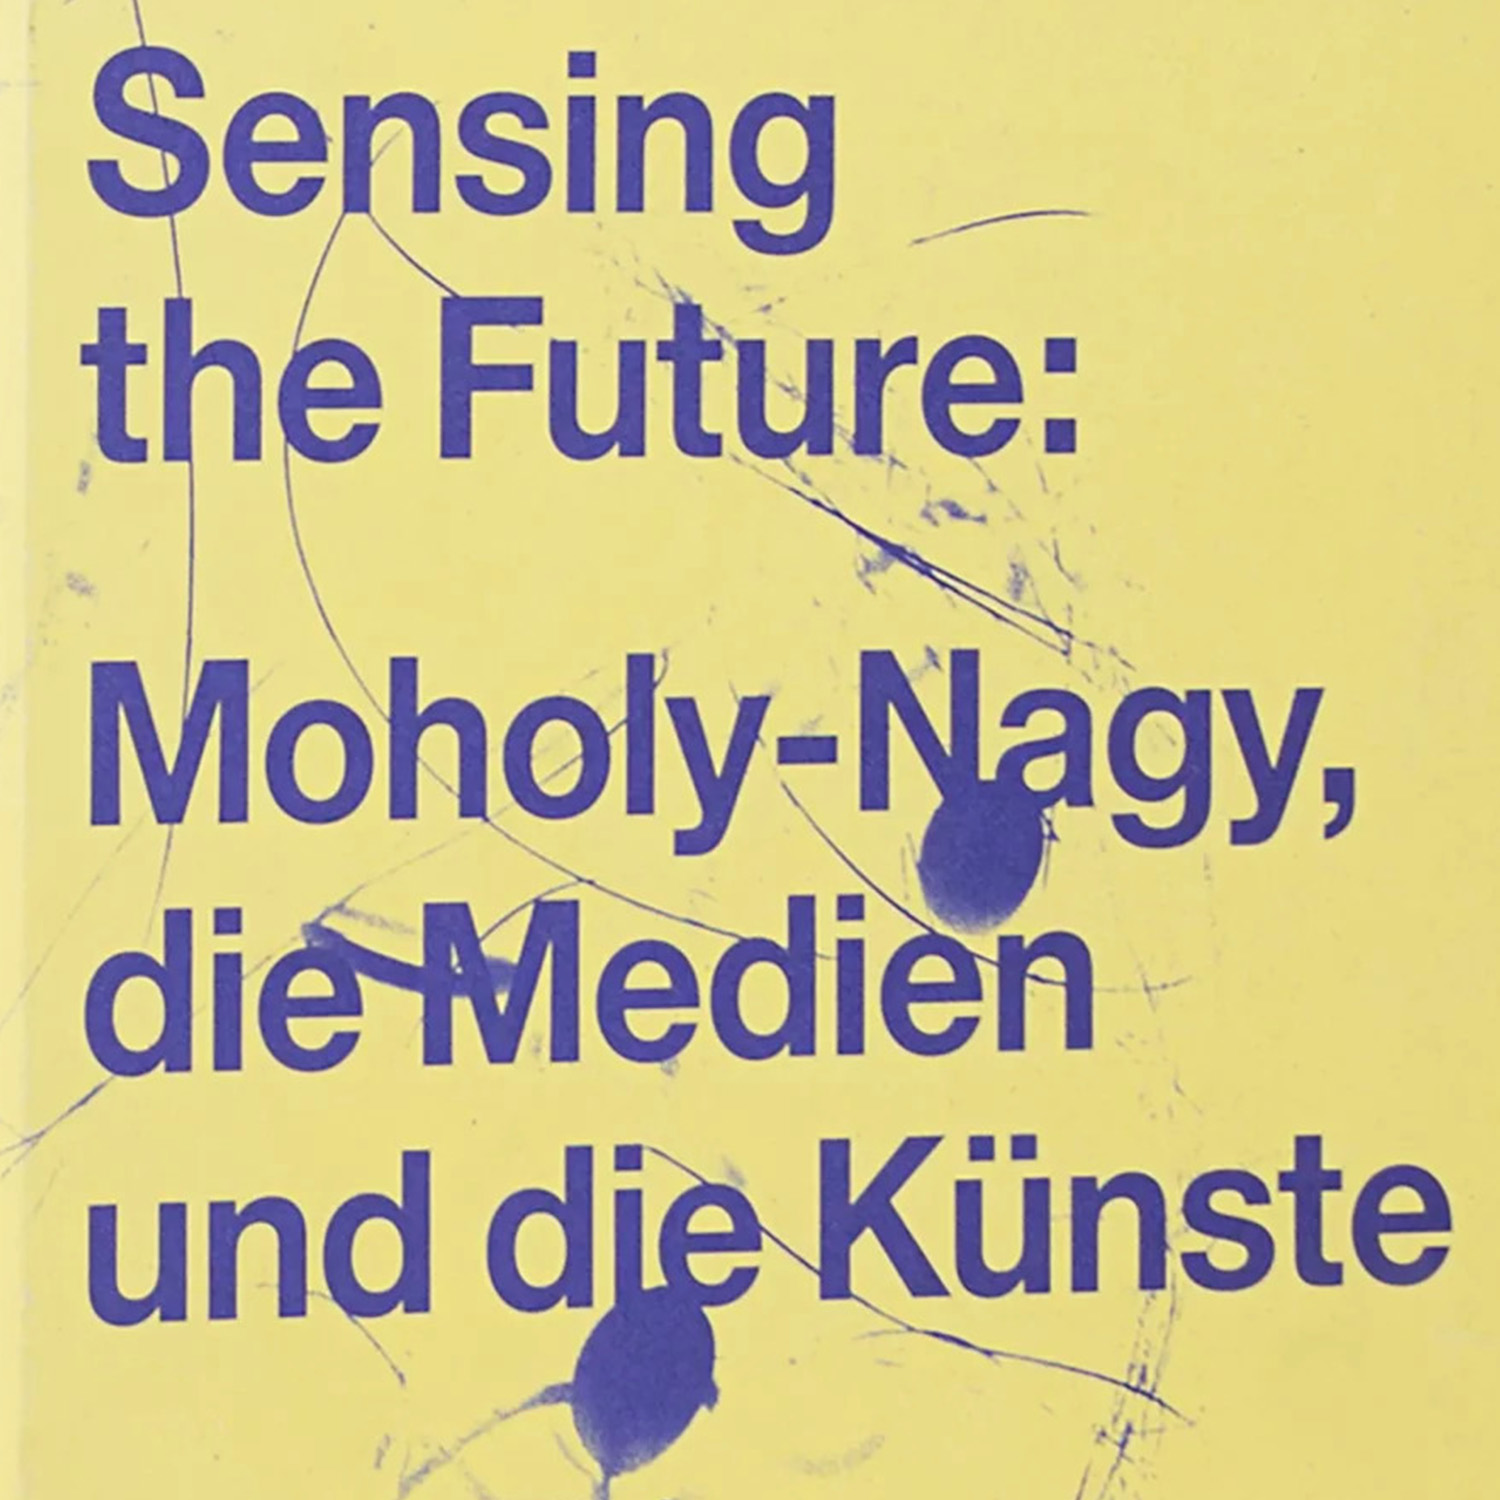 صورة استشعار المستقبل: موهولي-ناجي، وسائط وفنون
